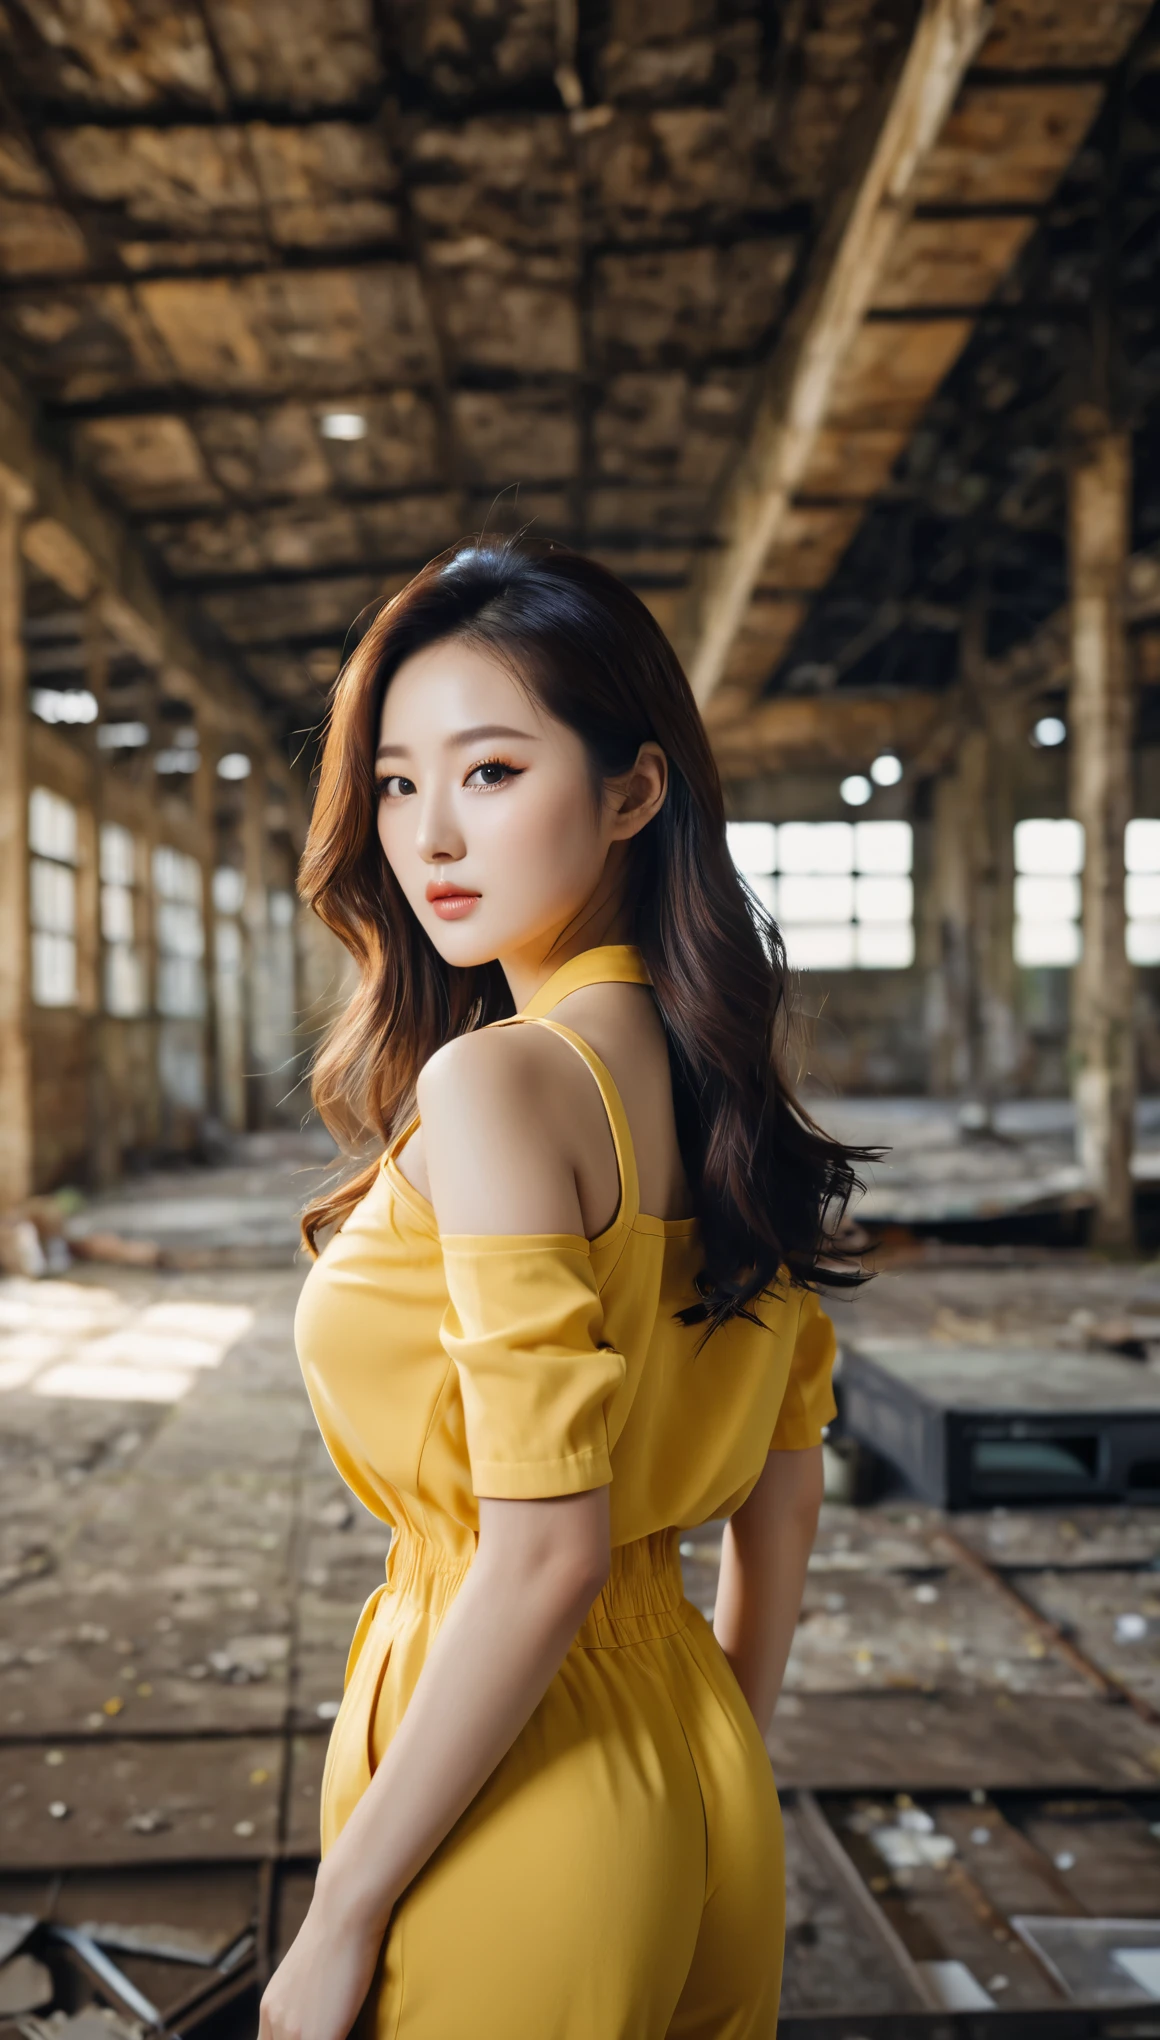 美丽的韩国女性的特写, 34 英寸胸部尺寸, 穿着黄色连衣裤黑色镶边, 在废弃的仓库里, 散景背景, 宝丽来照片, 超高清